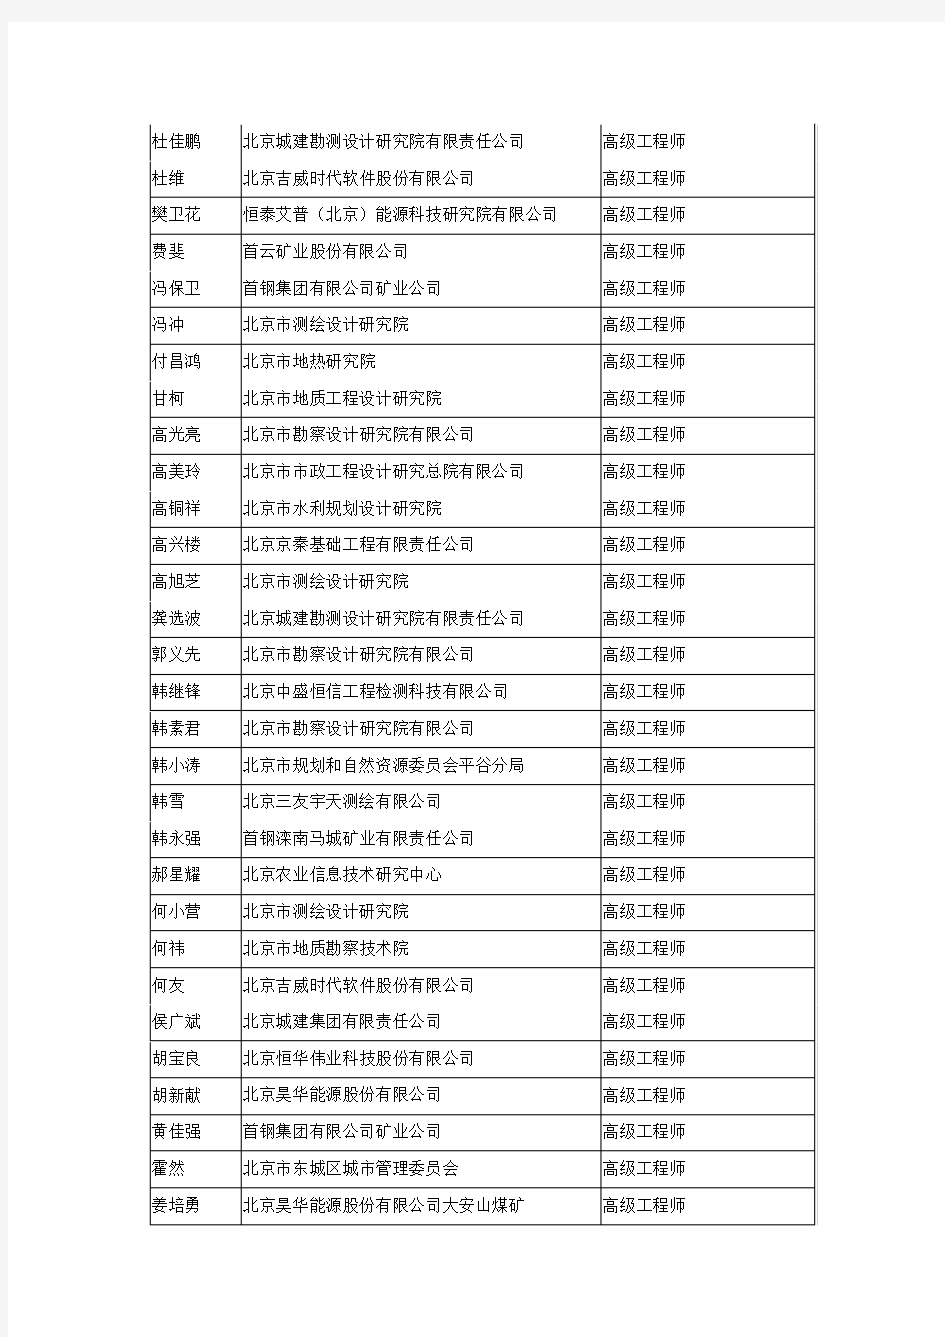 2019年北京市高级专业技术资格评审结果公示第42号(地矿测绘)